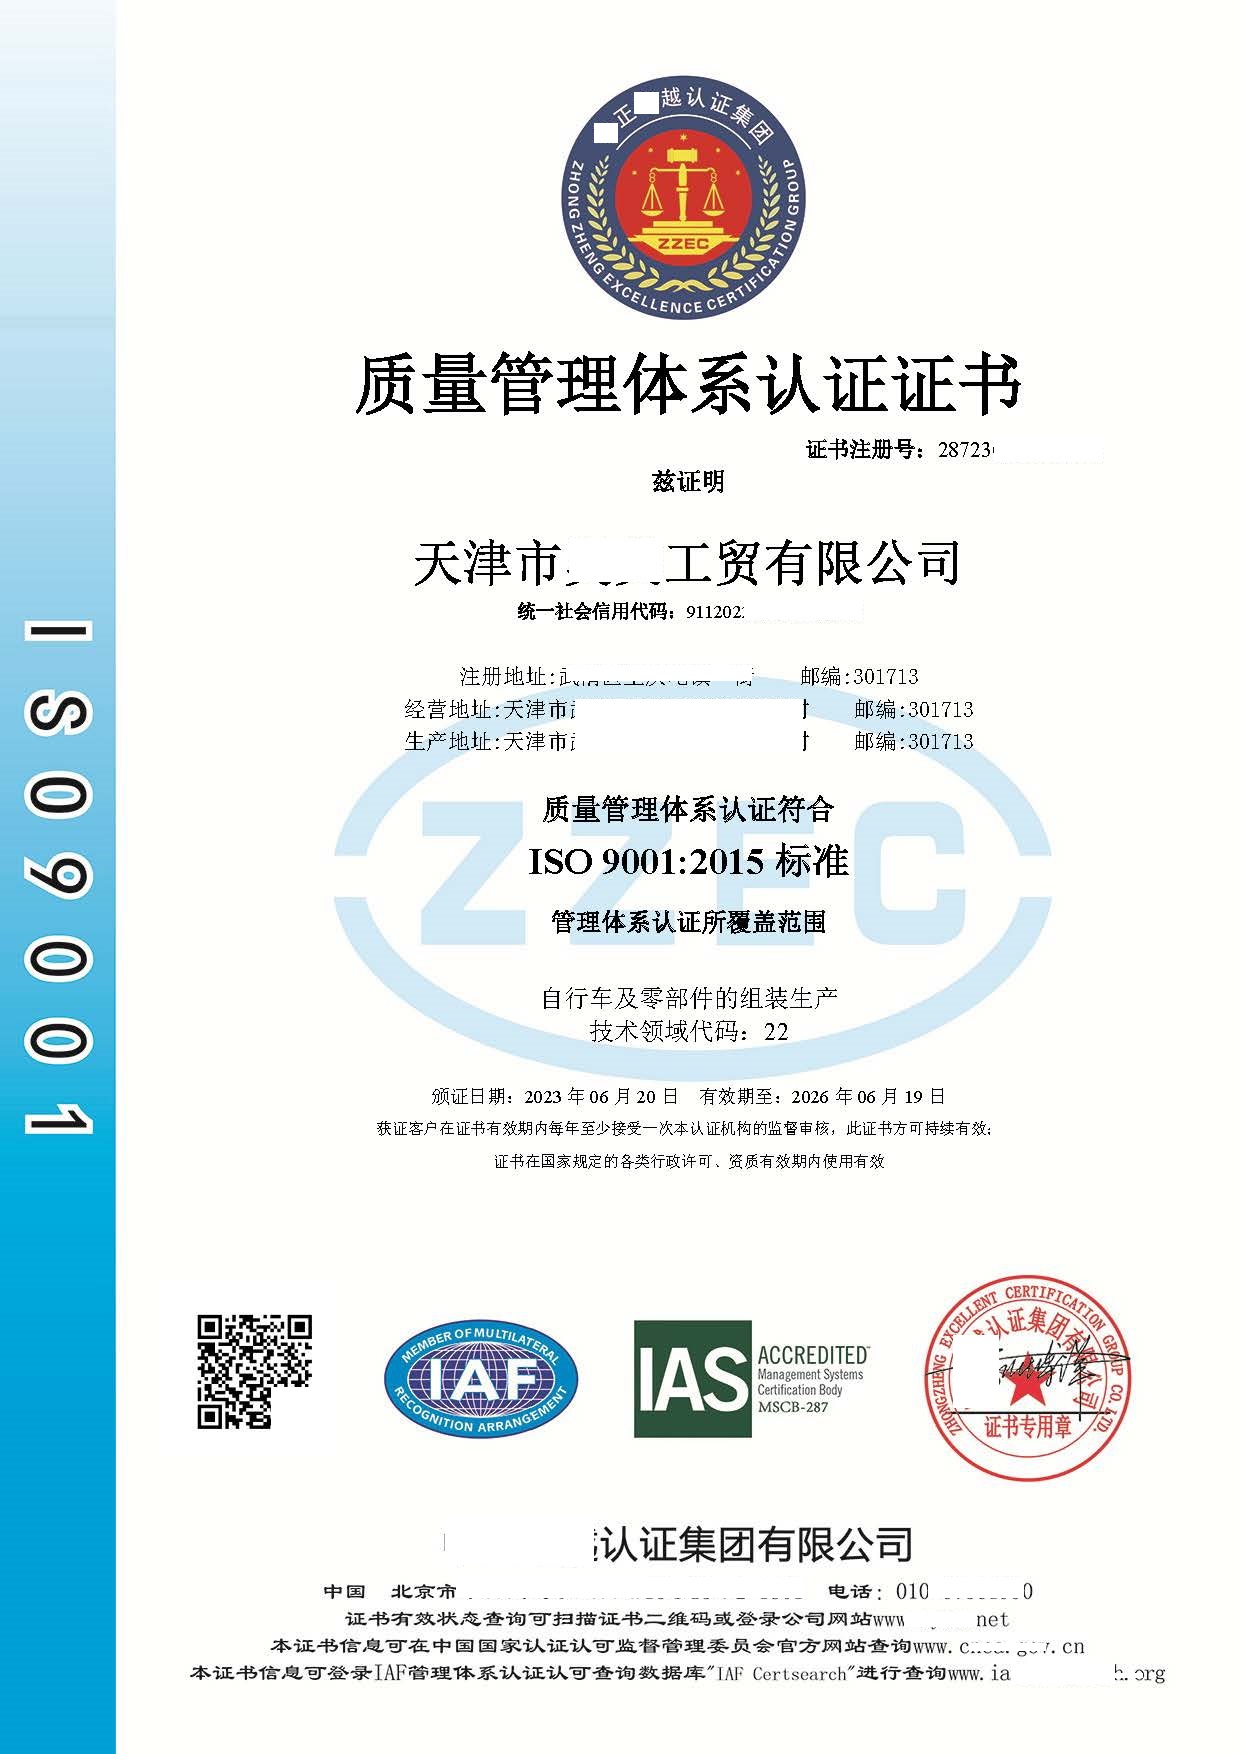 恭喜天津市**工贸有限公司获得质量管理体系认证证书